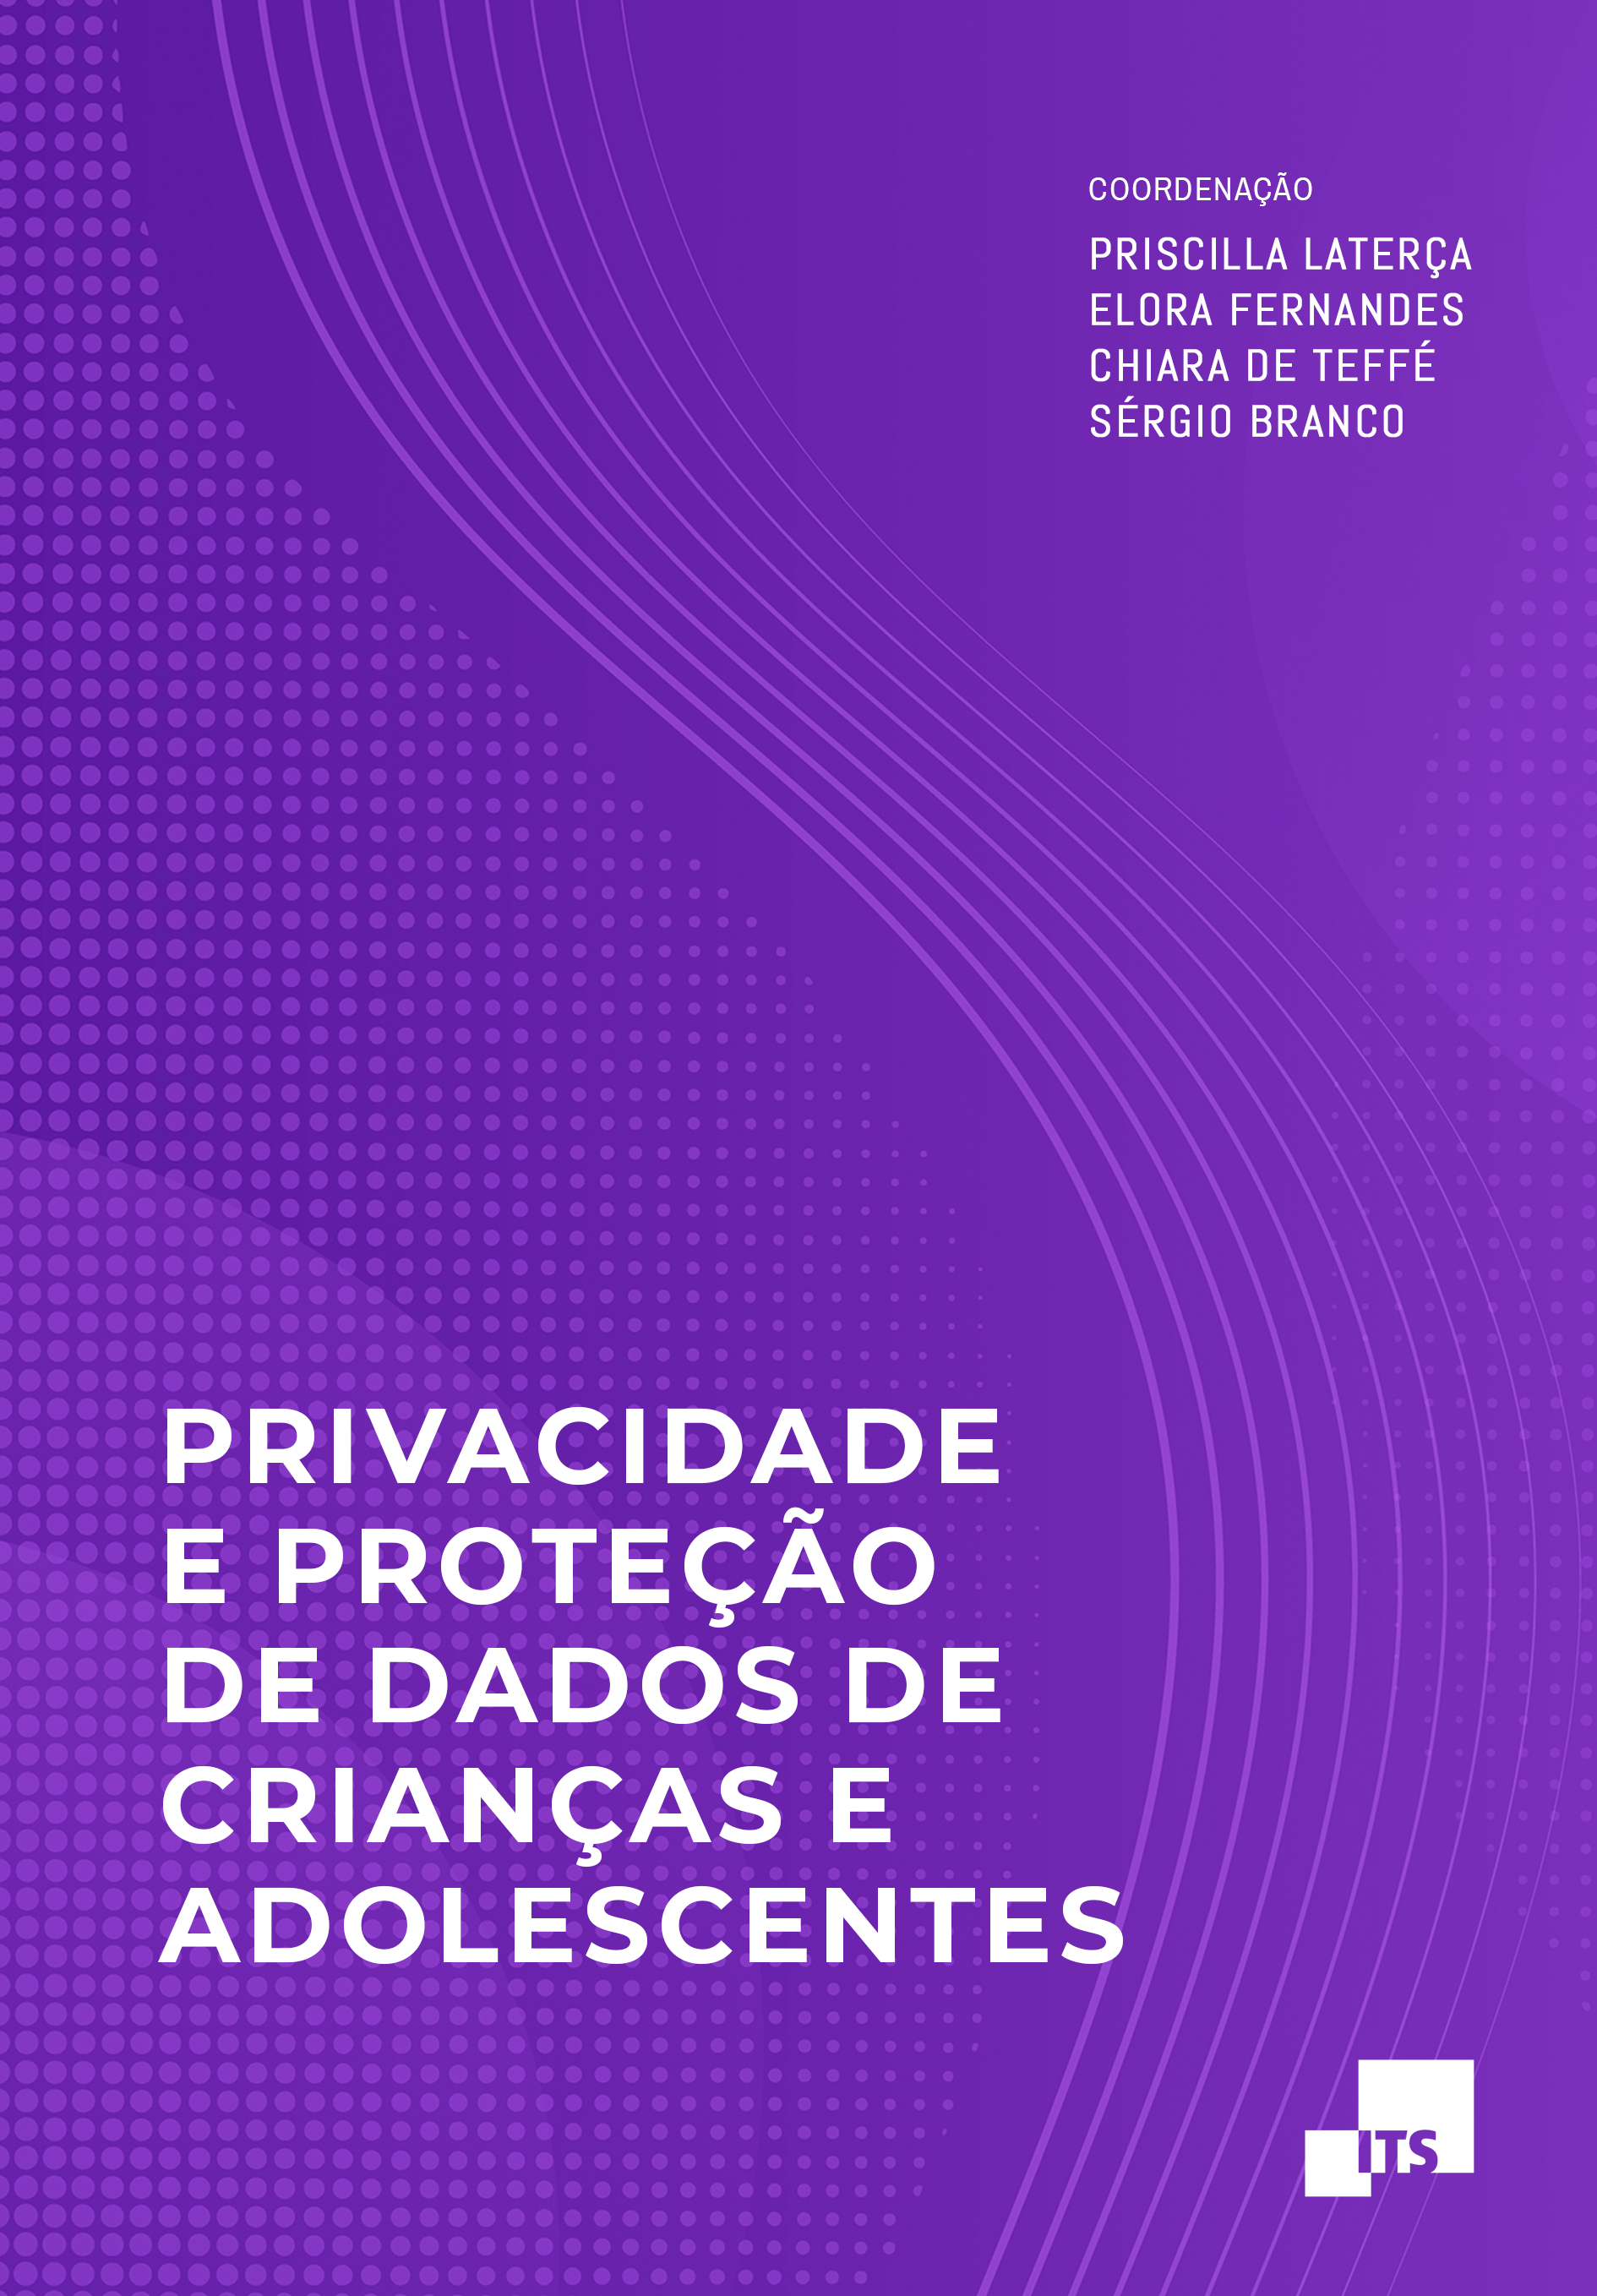 capa do documento "privacidadee e protecao de dados de criancas e adolescentes"